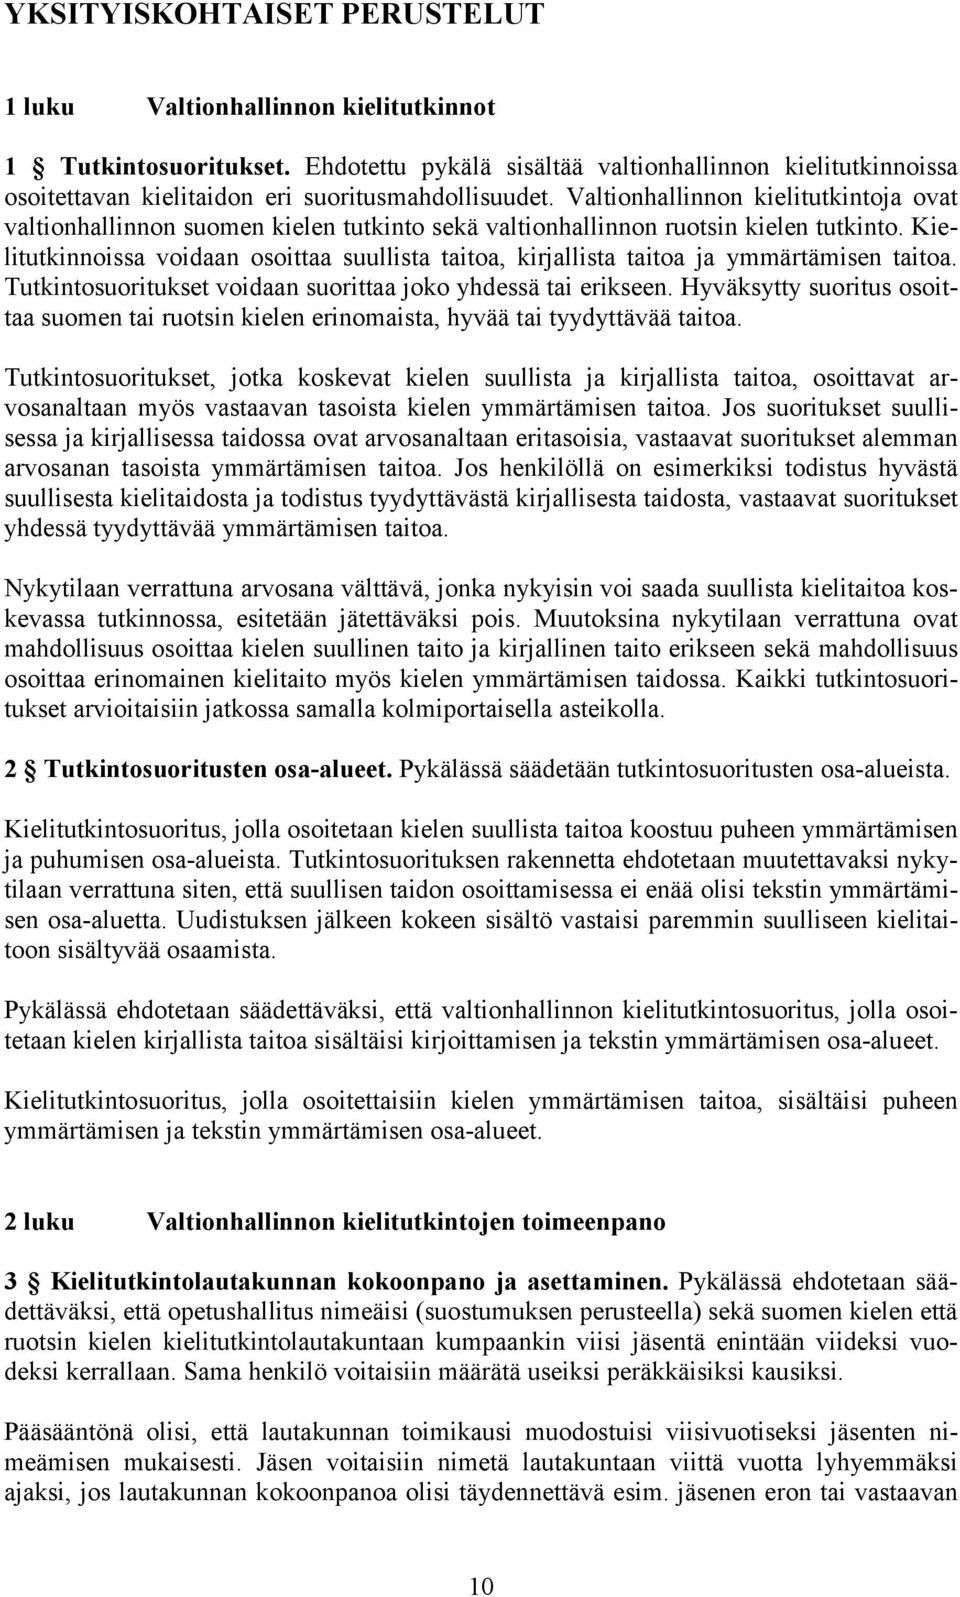 Valtionhallinnon kielitutkintoja ovat valtionhallinnon suomen kielen tutkinto sekä valtionhallinnon ruotsin kielen tutkinto.